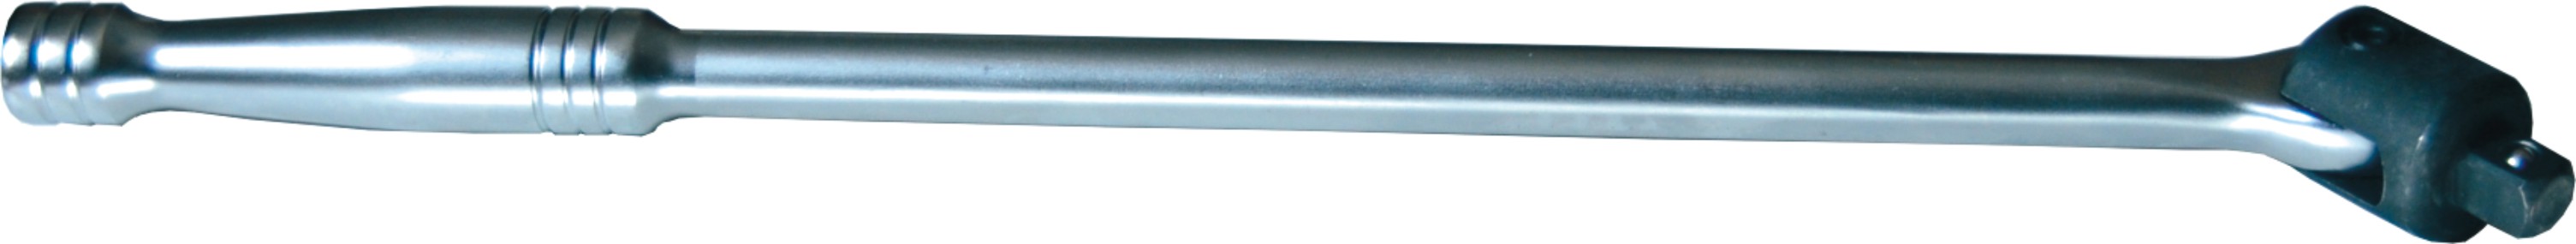 A67309 - 3/4" Sq. Dr. Breaker Bar 600mm